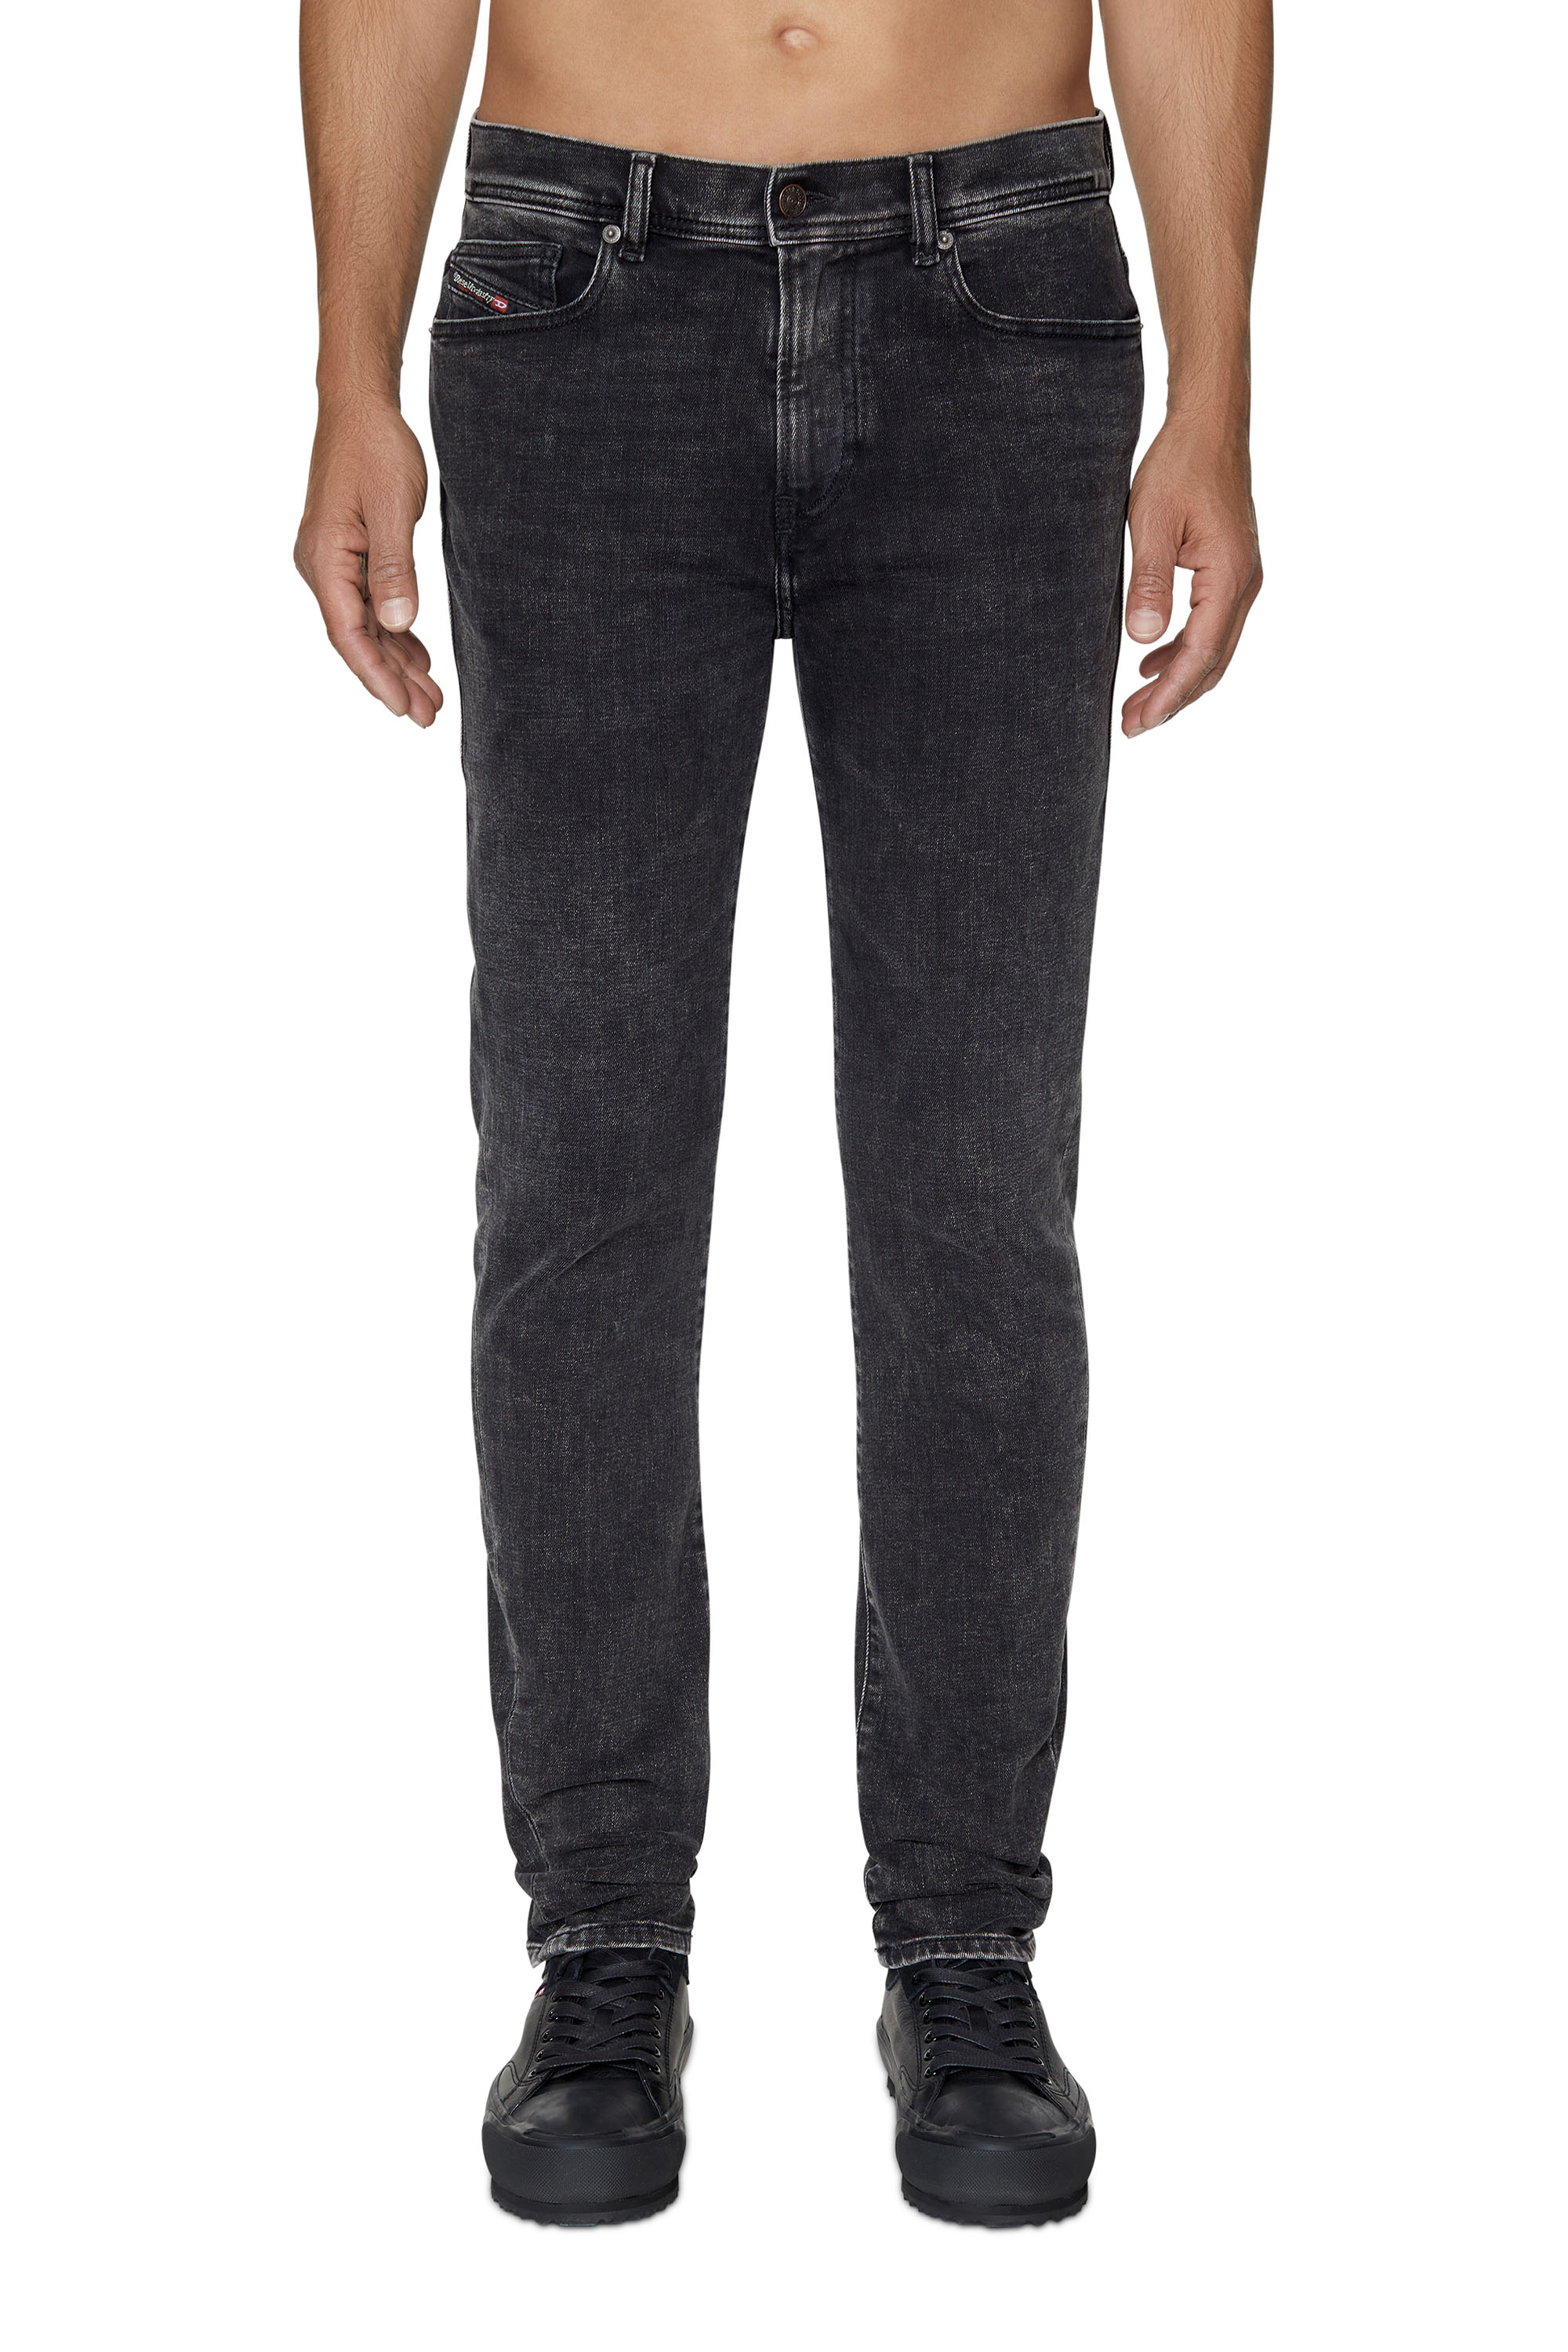 1983 09C22 Skinny Jeans, Black/Dark grey - Jeans